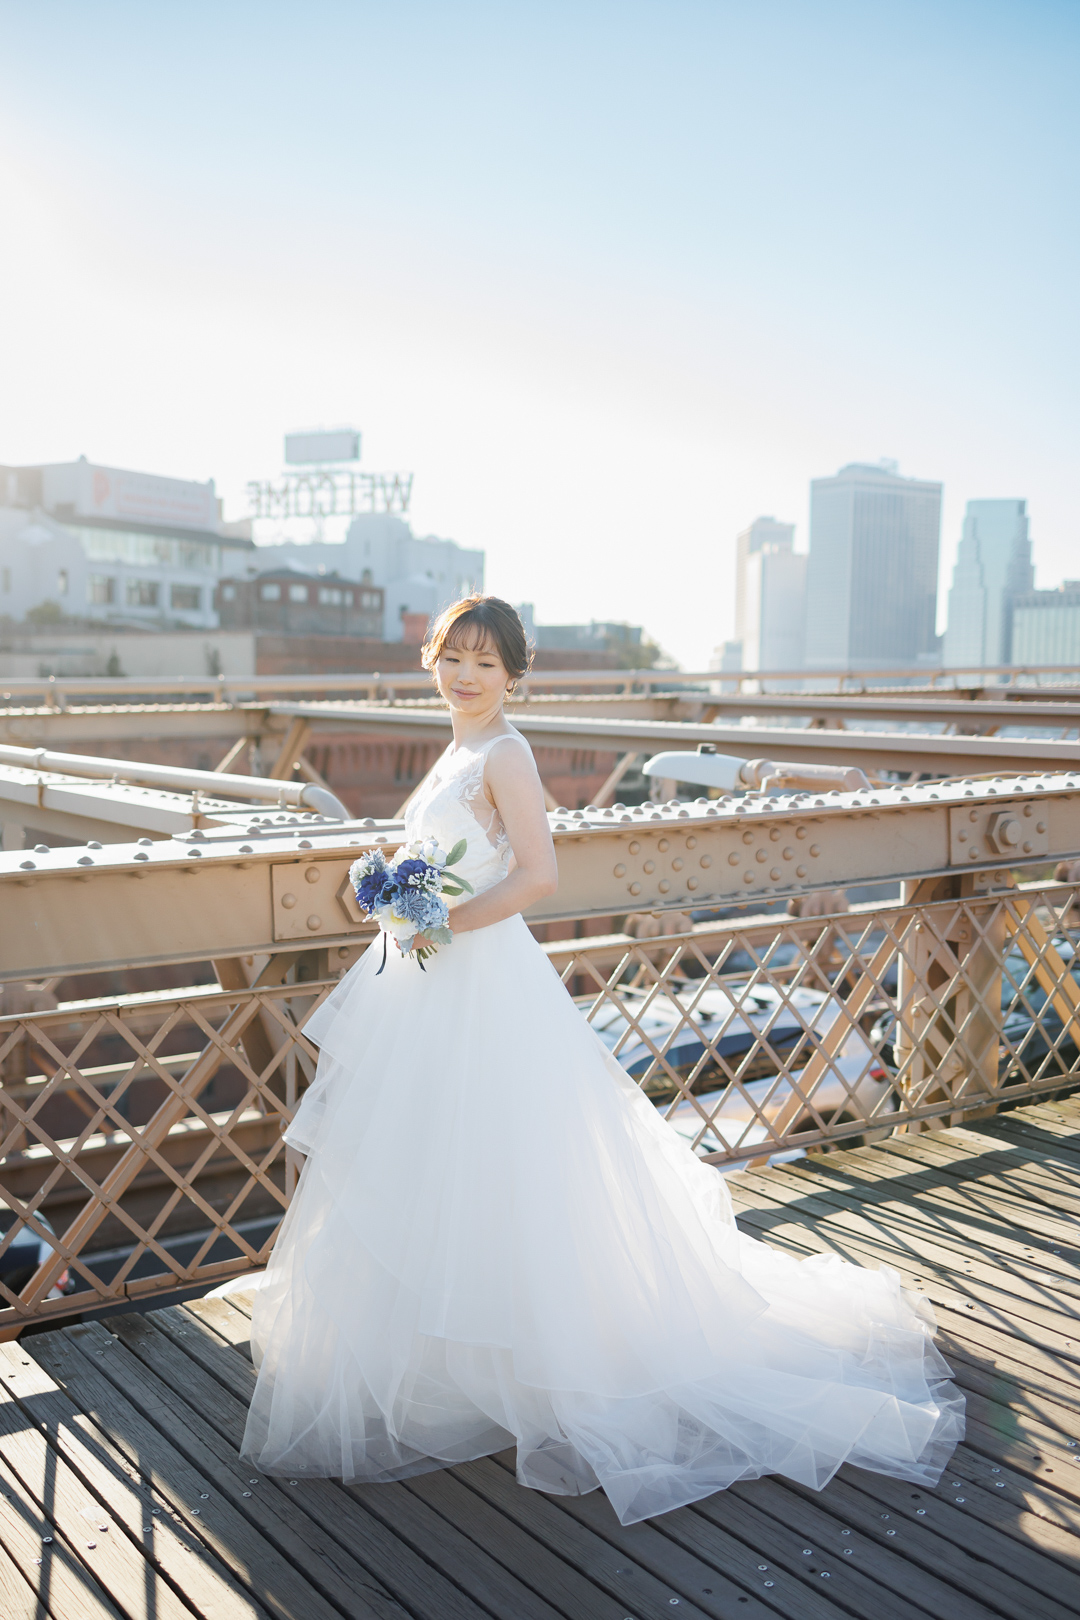 ニューヨーク前撮り/ウェディングフォト/ブルックリンブリッジに立つ美しいウェディングドレス姿の花嫁。